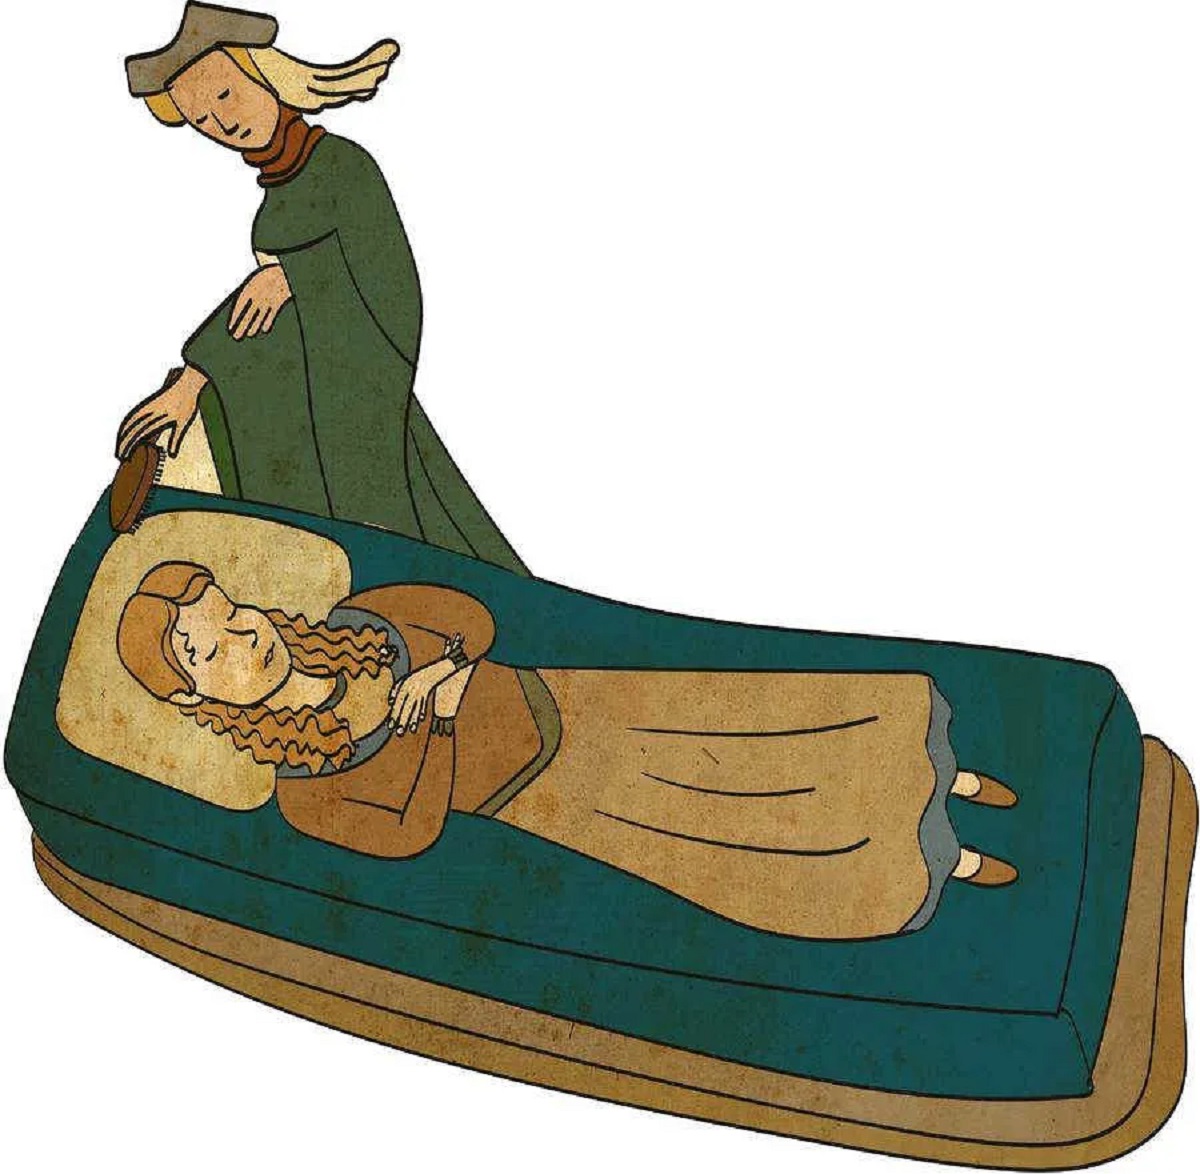 مرگ زیبا در قرون وسطی